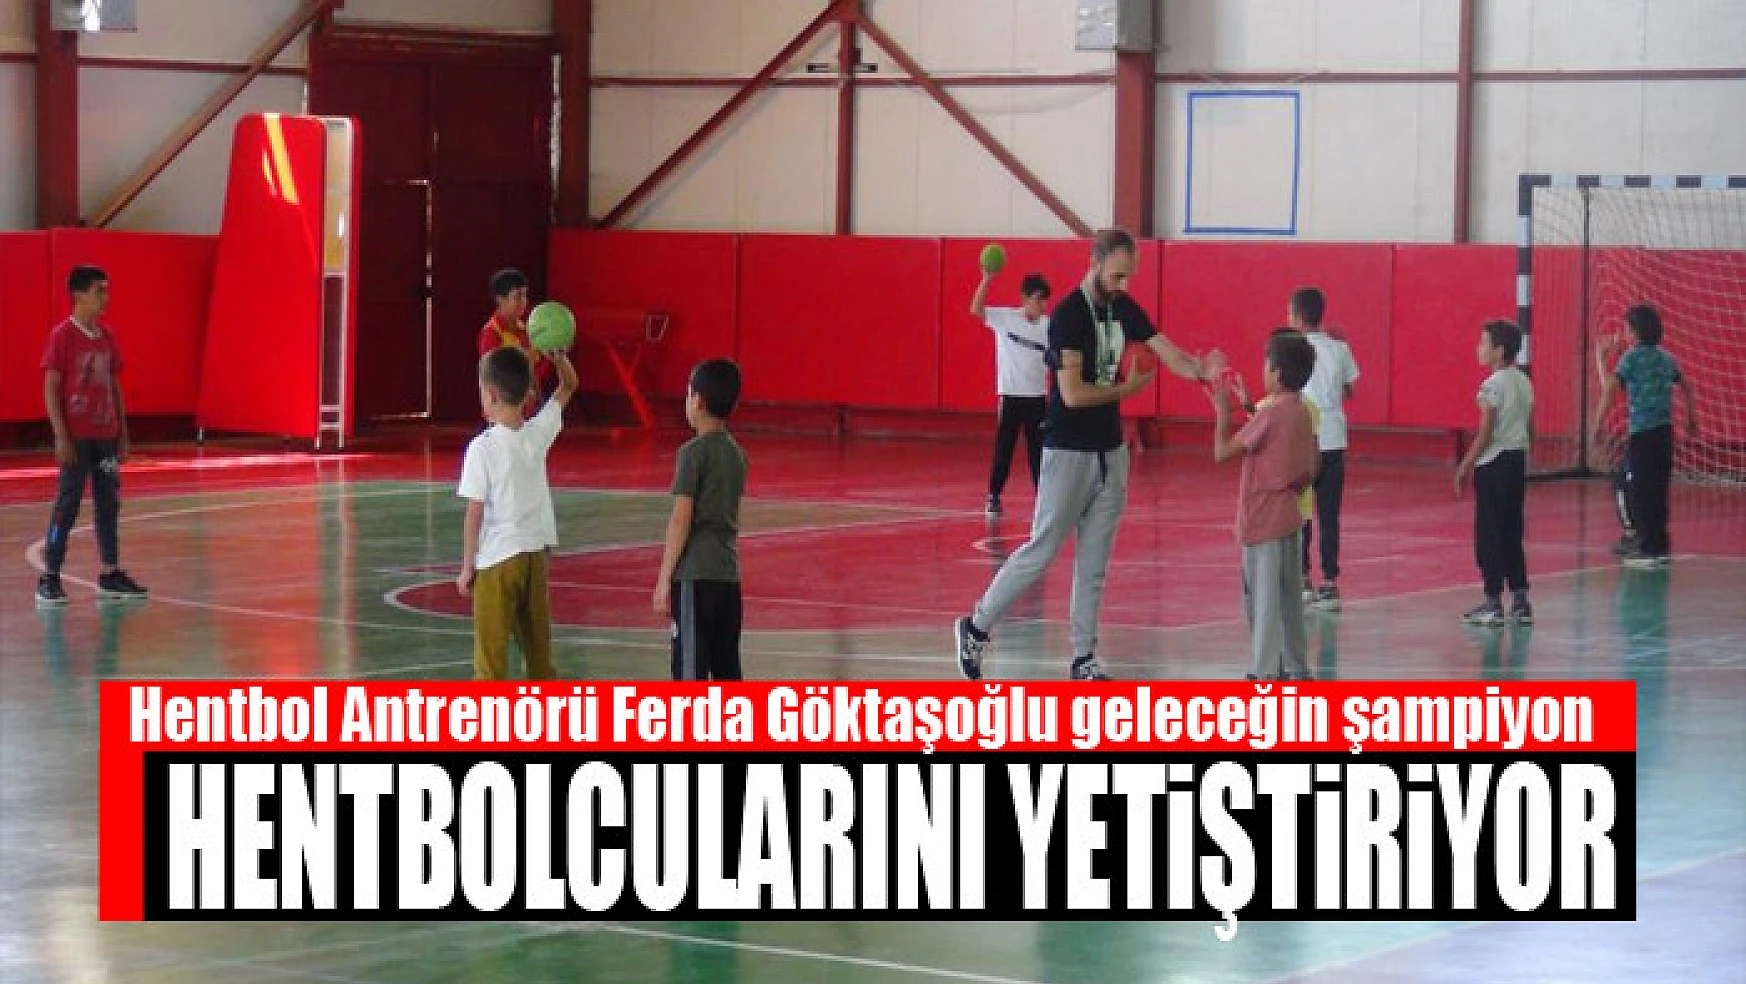 Hentbol Antrenörü Ferda Göktaşoğlu geleceğin şampiyon hentbolcularını yetiştiriyor